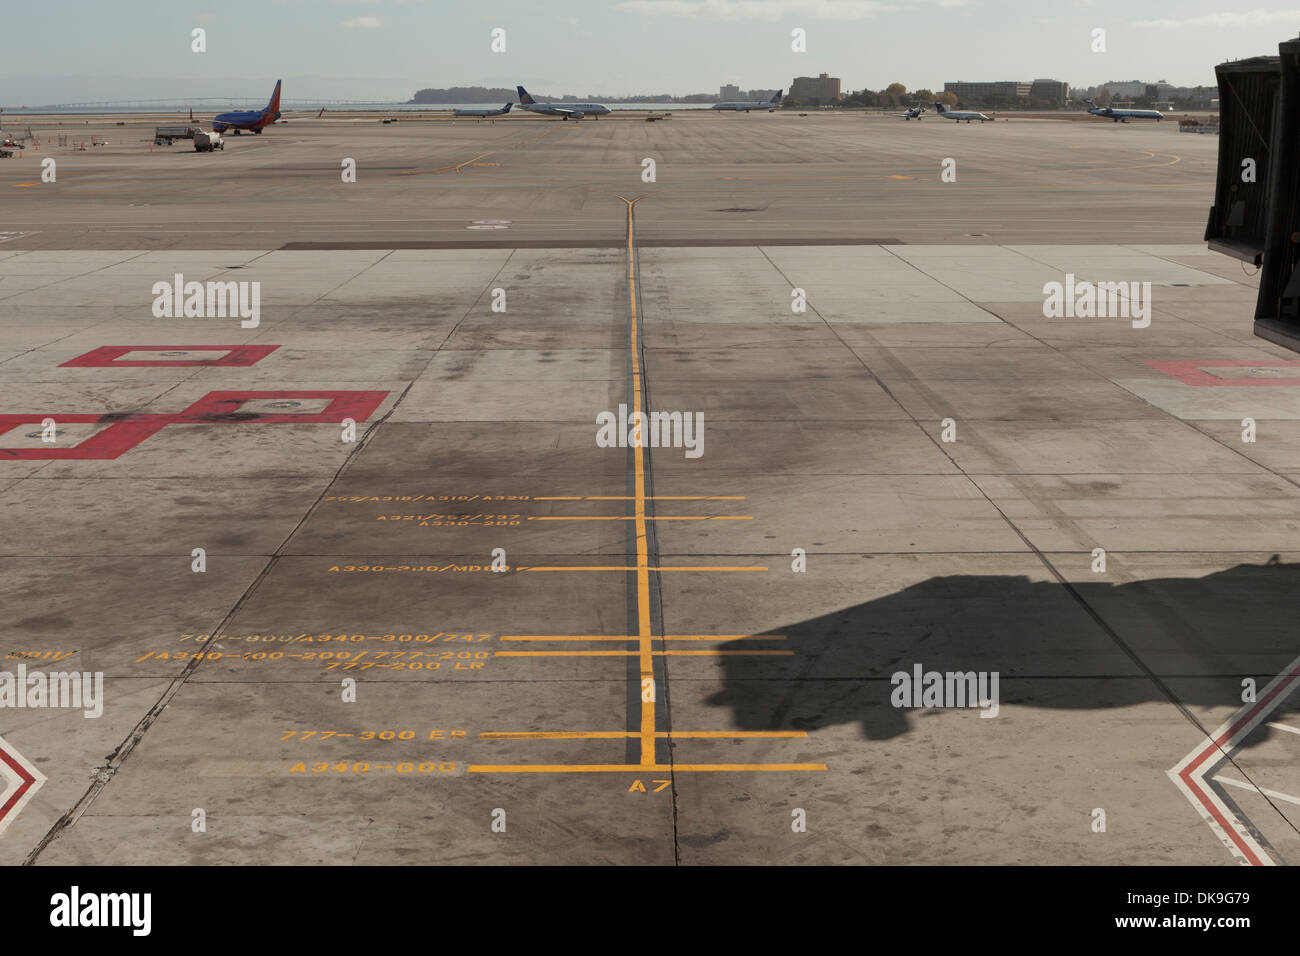 Parcheggio aereo riferimento linee guida - Aeroporto Internazionale di San Francisco - San Francisco, California USA Foto Stock